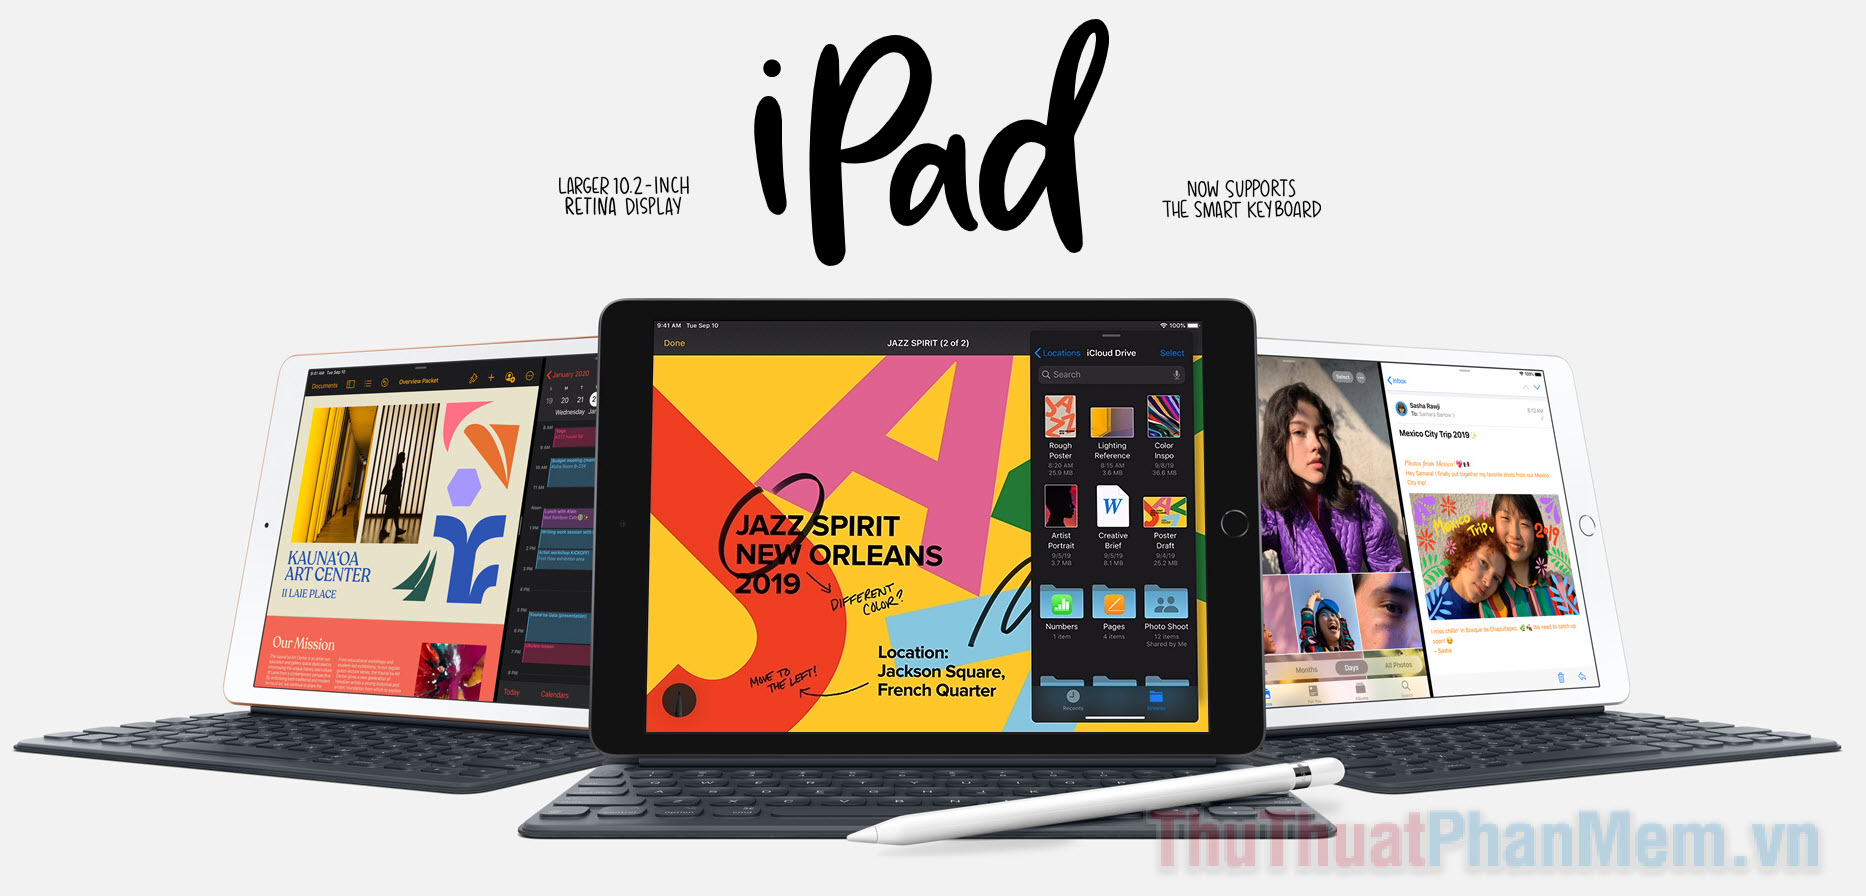 iPad 10,2 inch